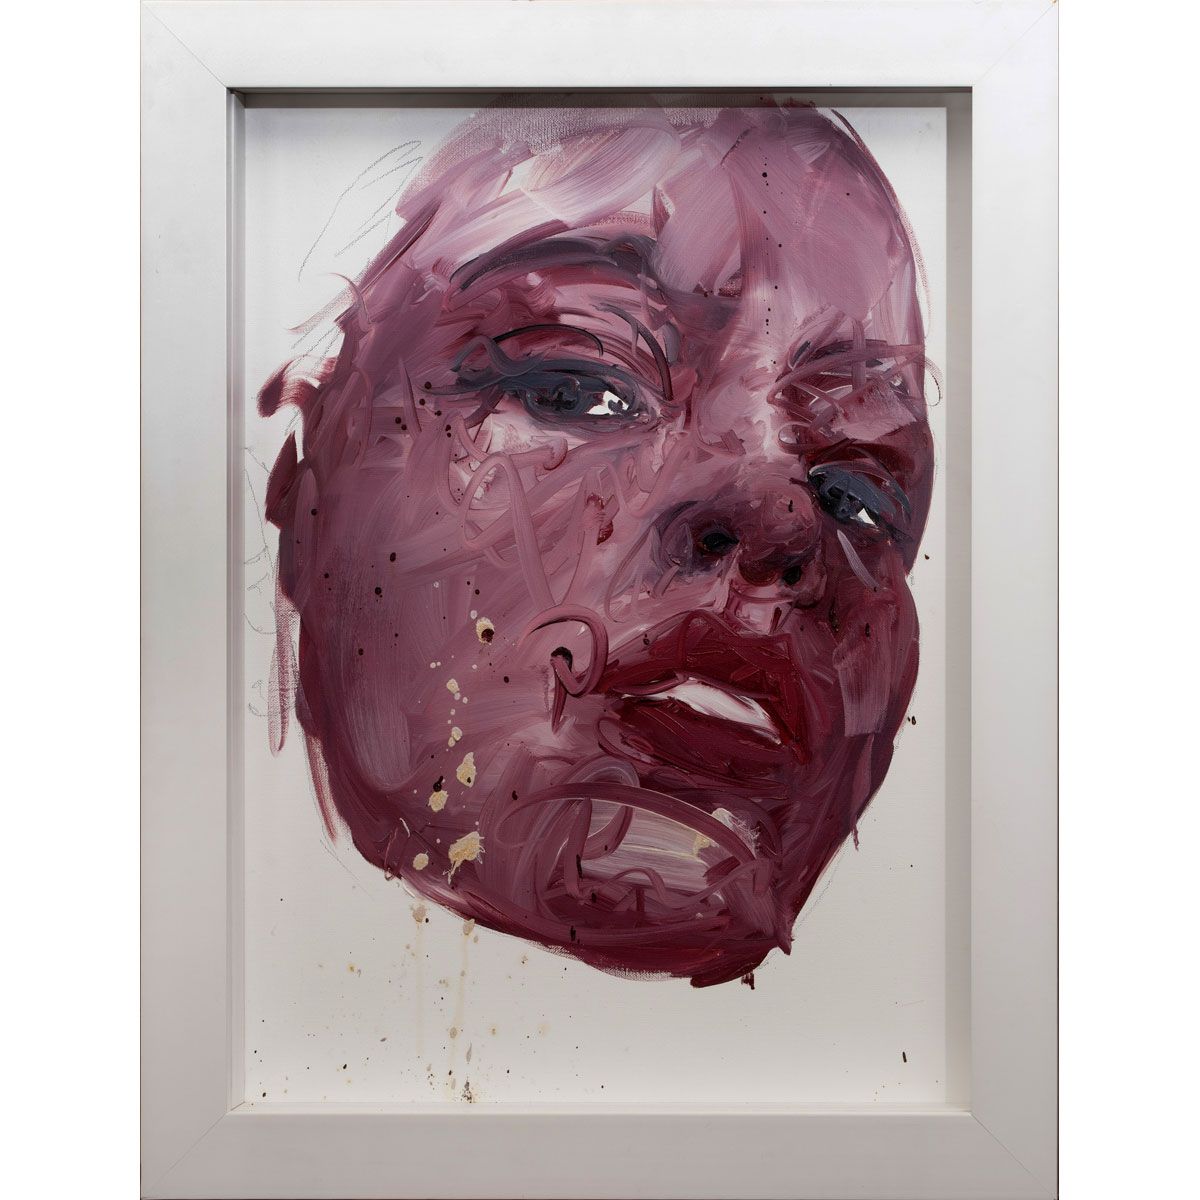 Null Philippe PASQUA, Franzose, geboren 1965

Porträt, 2010

Öl auf Leinwand

Si&hellip;